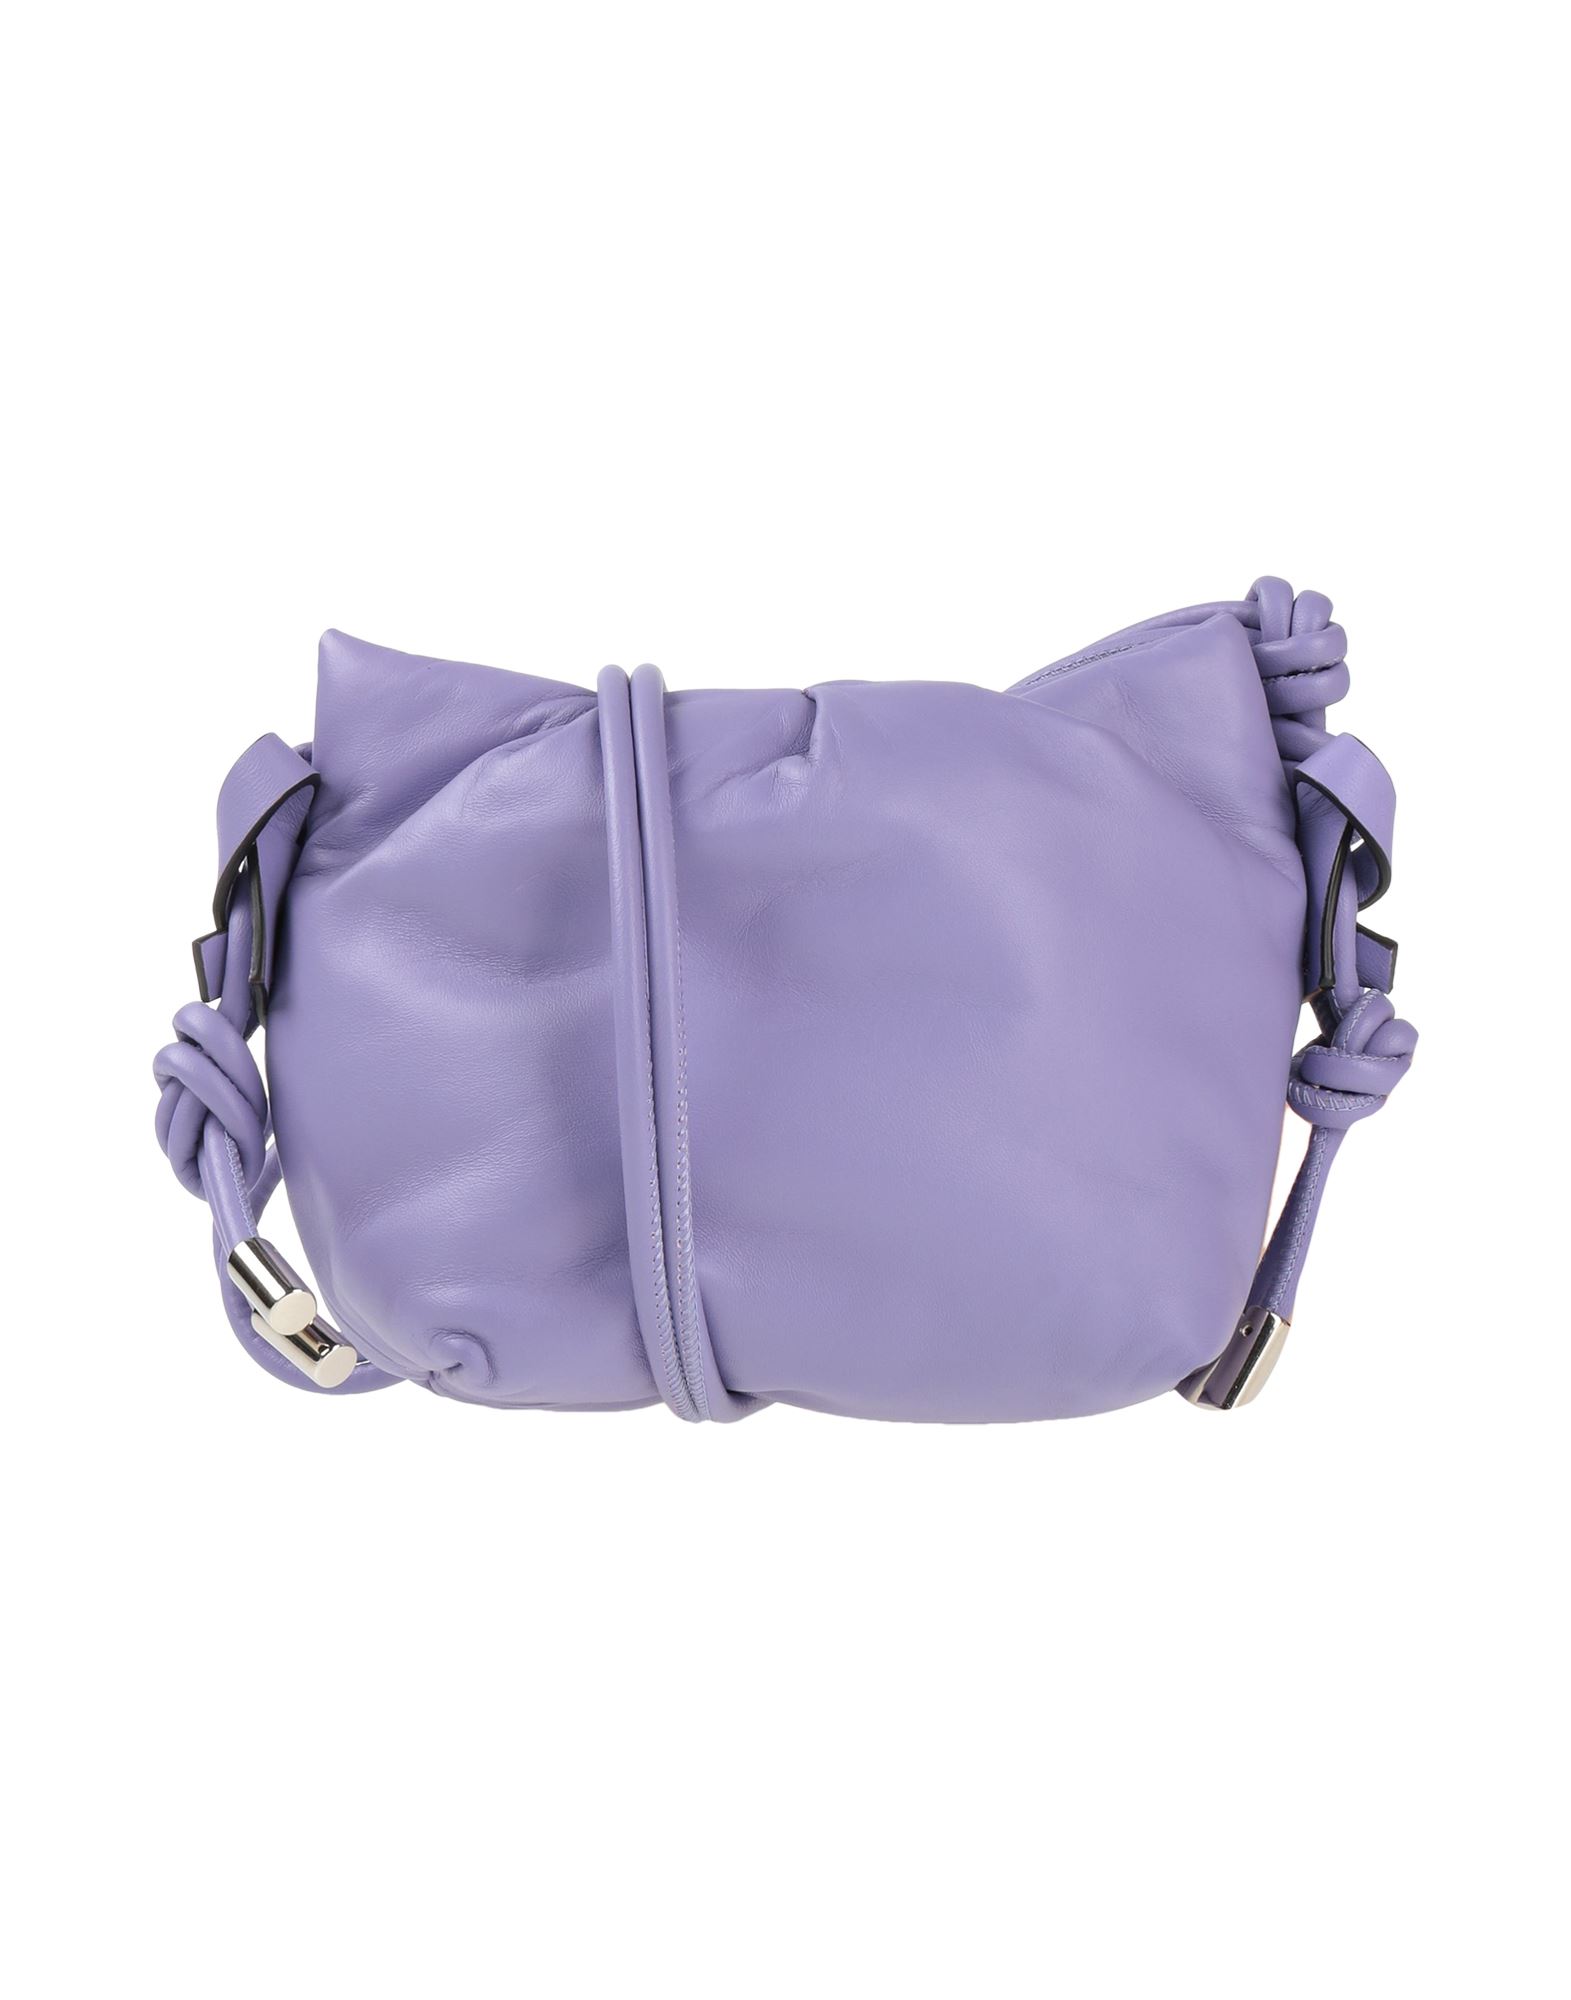 Dorothee Schumacher Handbags In Light Purple